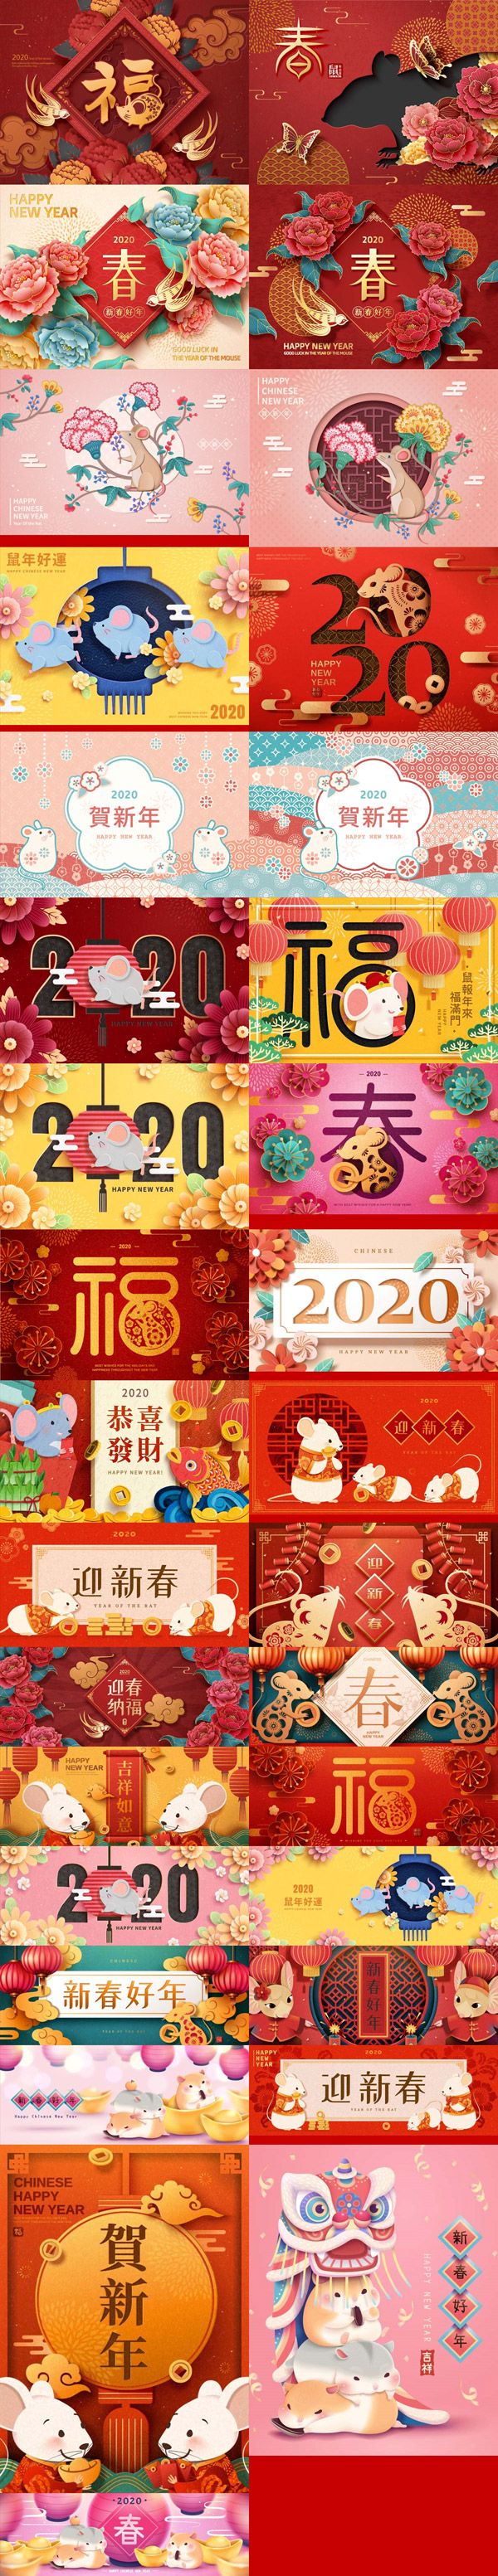 2020年传统中国风春节新年海报设计矢量素材